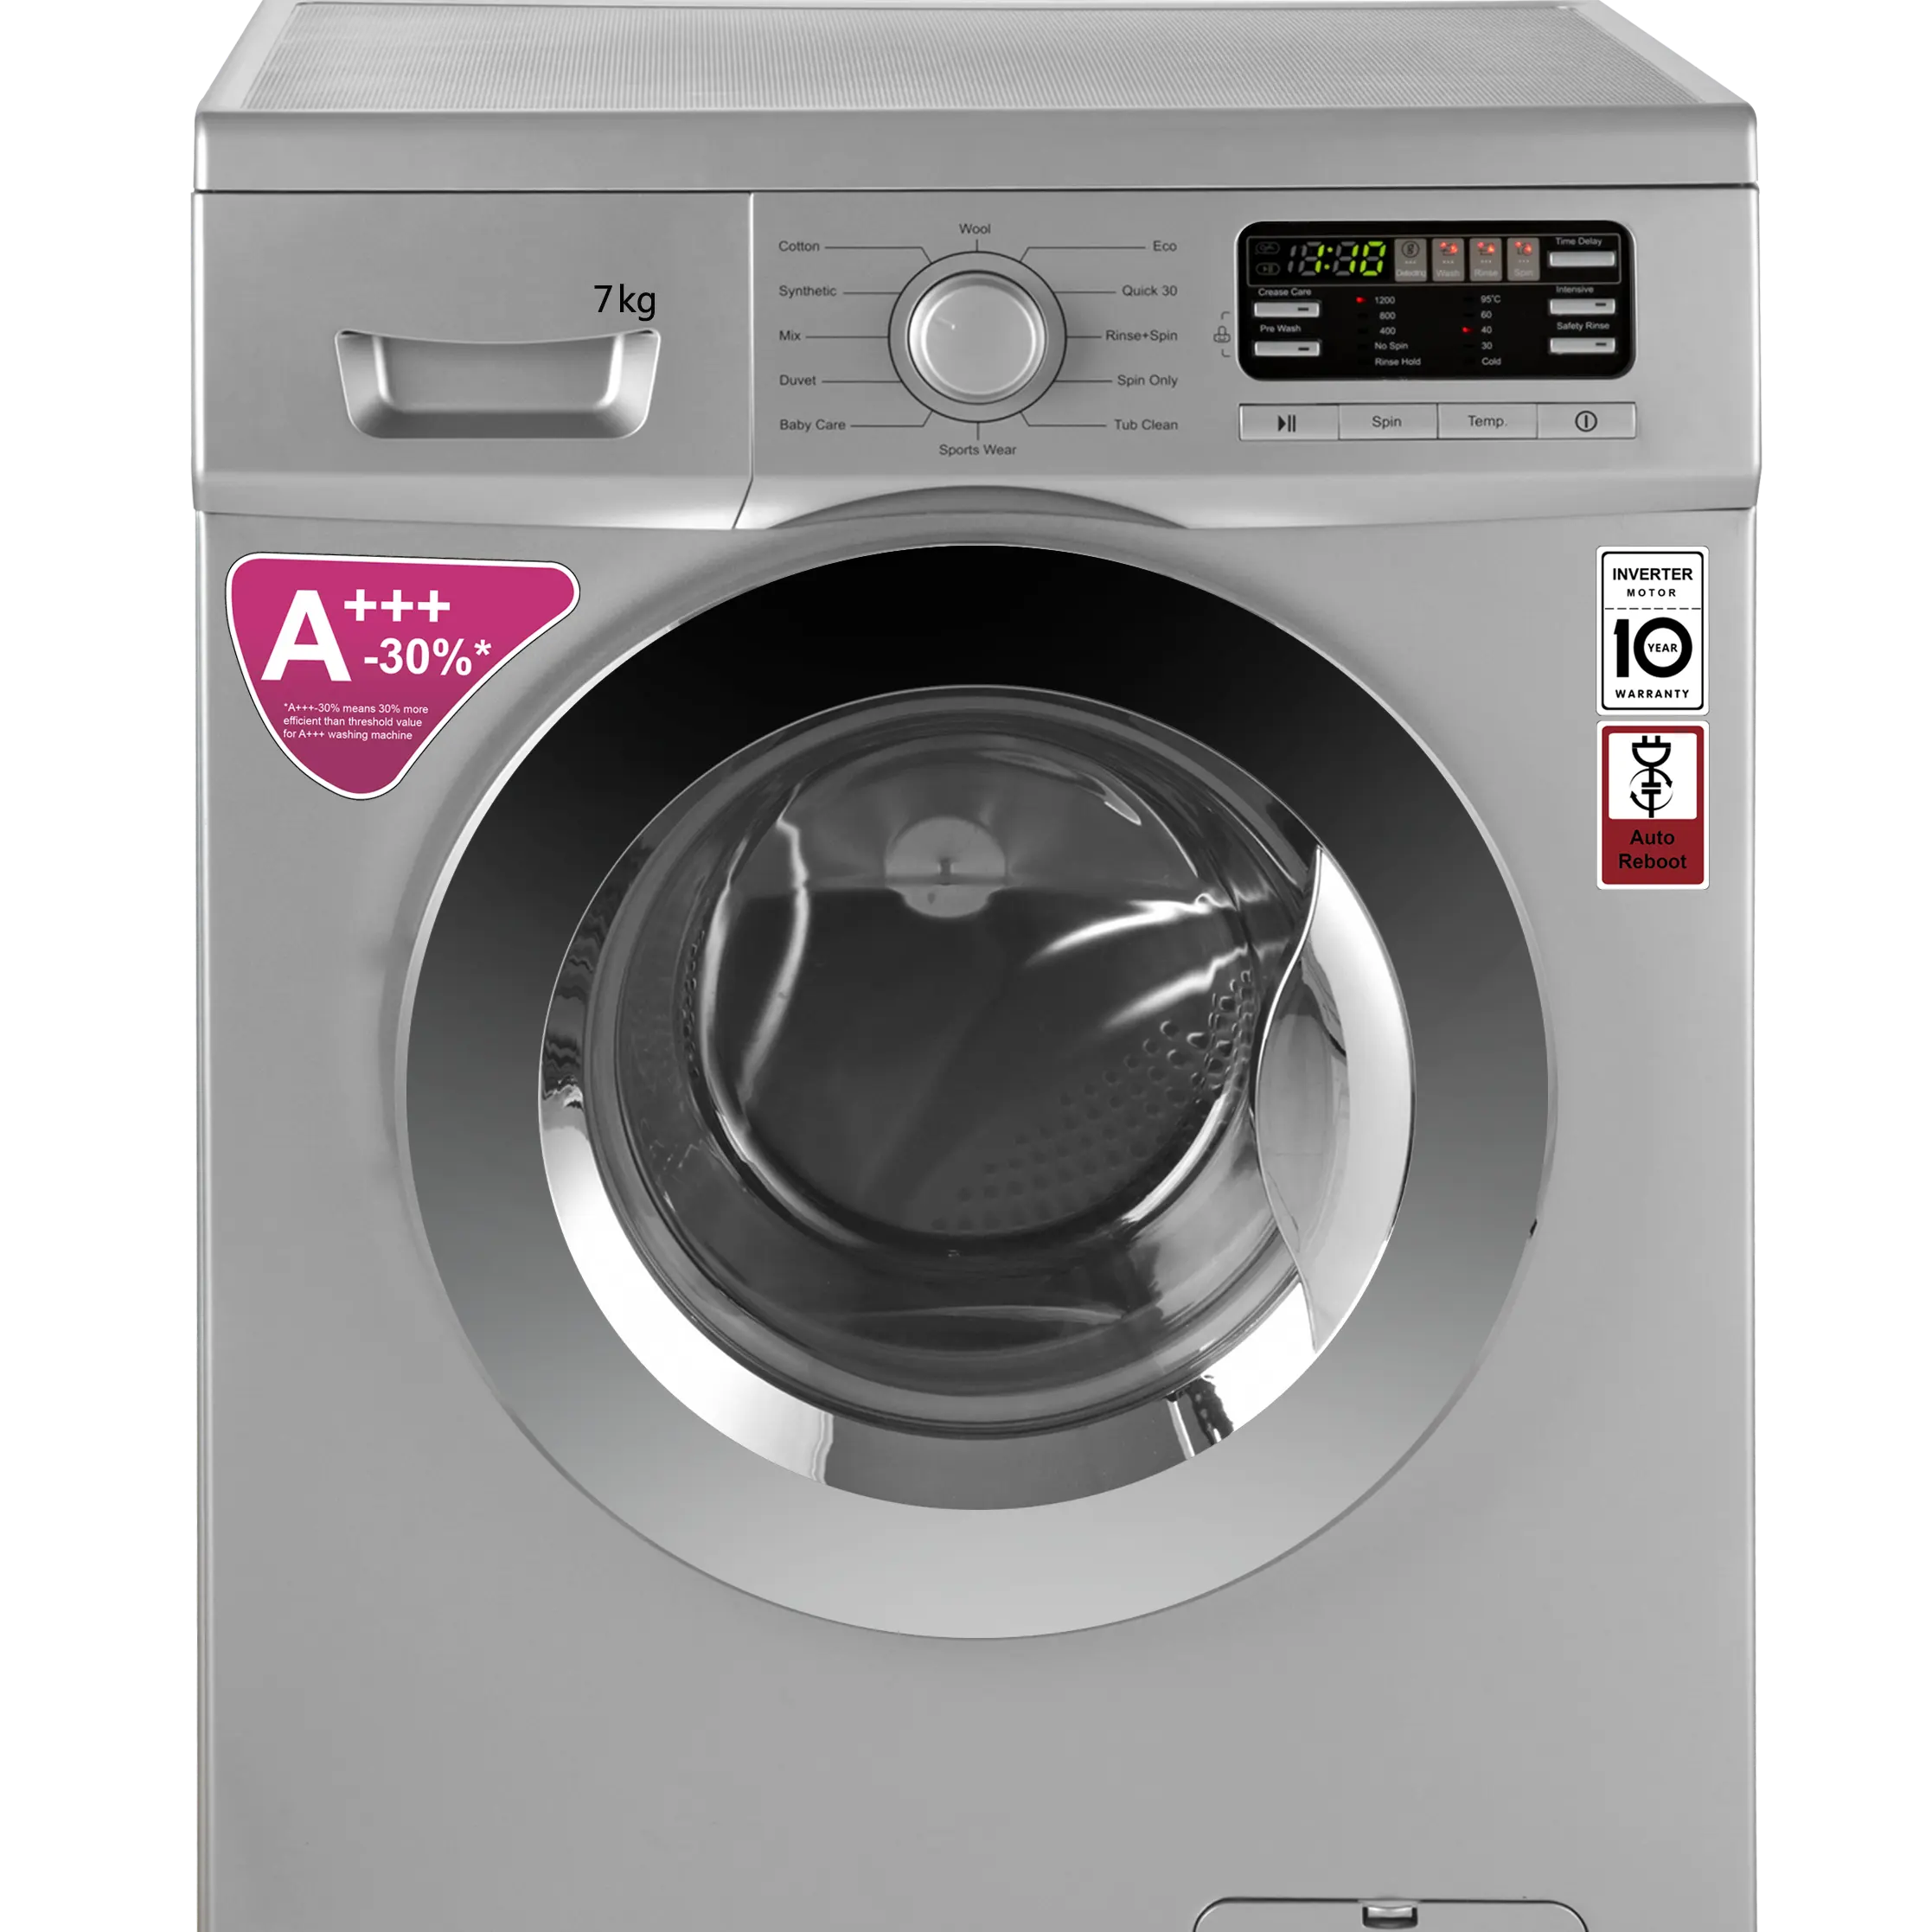 7 кг серебристый цвет полностью автоматическая стиральная машина/LGdesign фронтальная стиральная машина/оптовая продажа бытовой техники